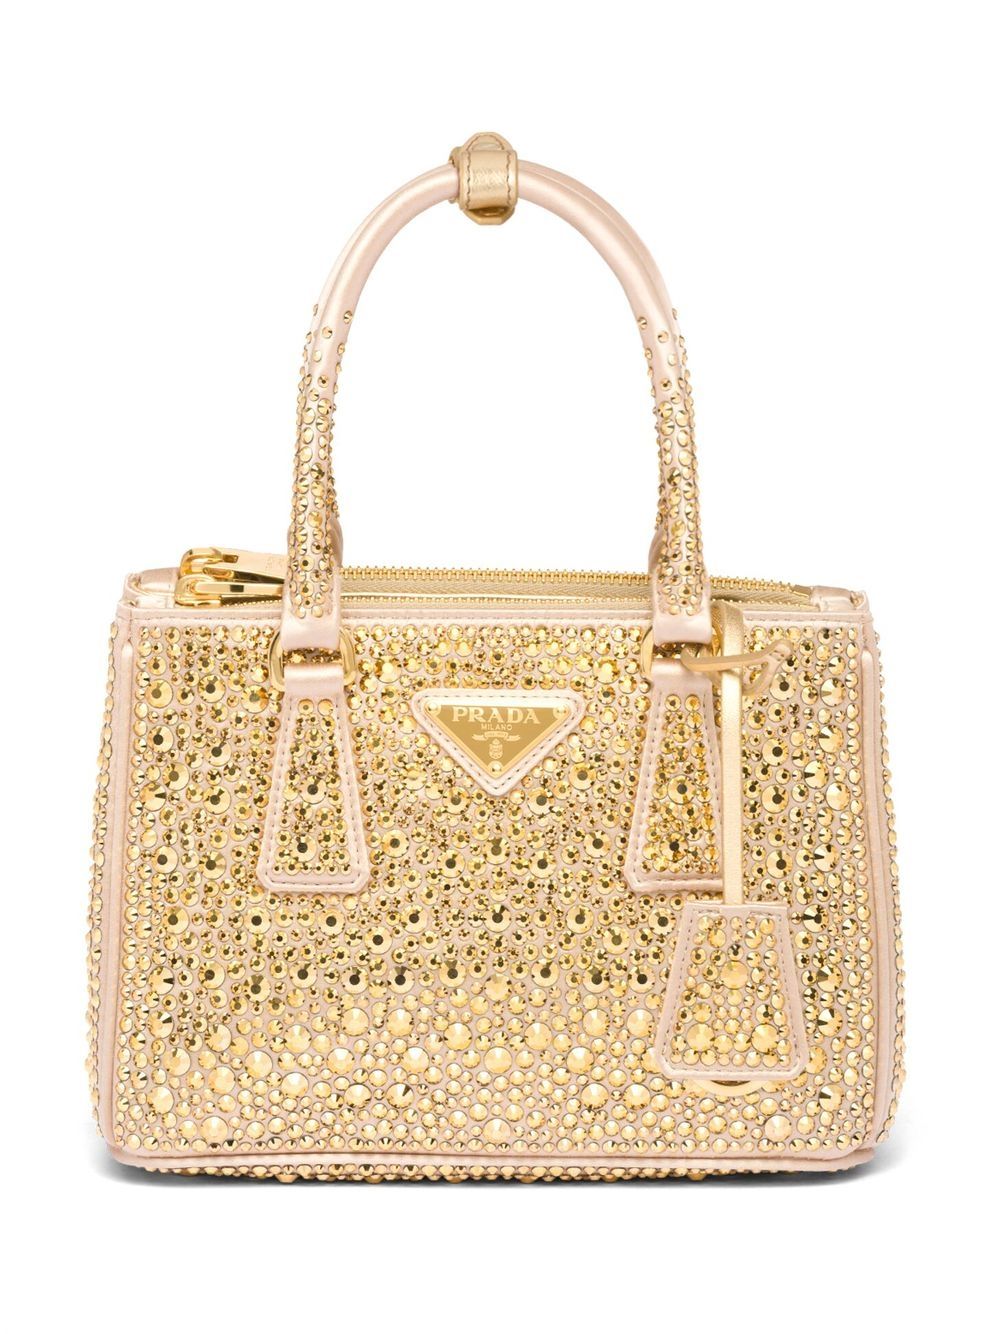 Crystal Embellished Shoulder Bag in Multicoloured - Prada